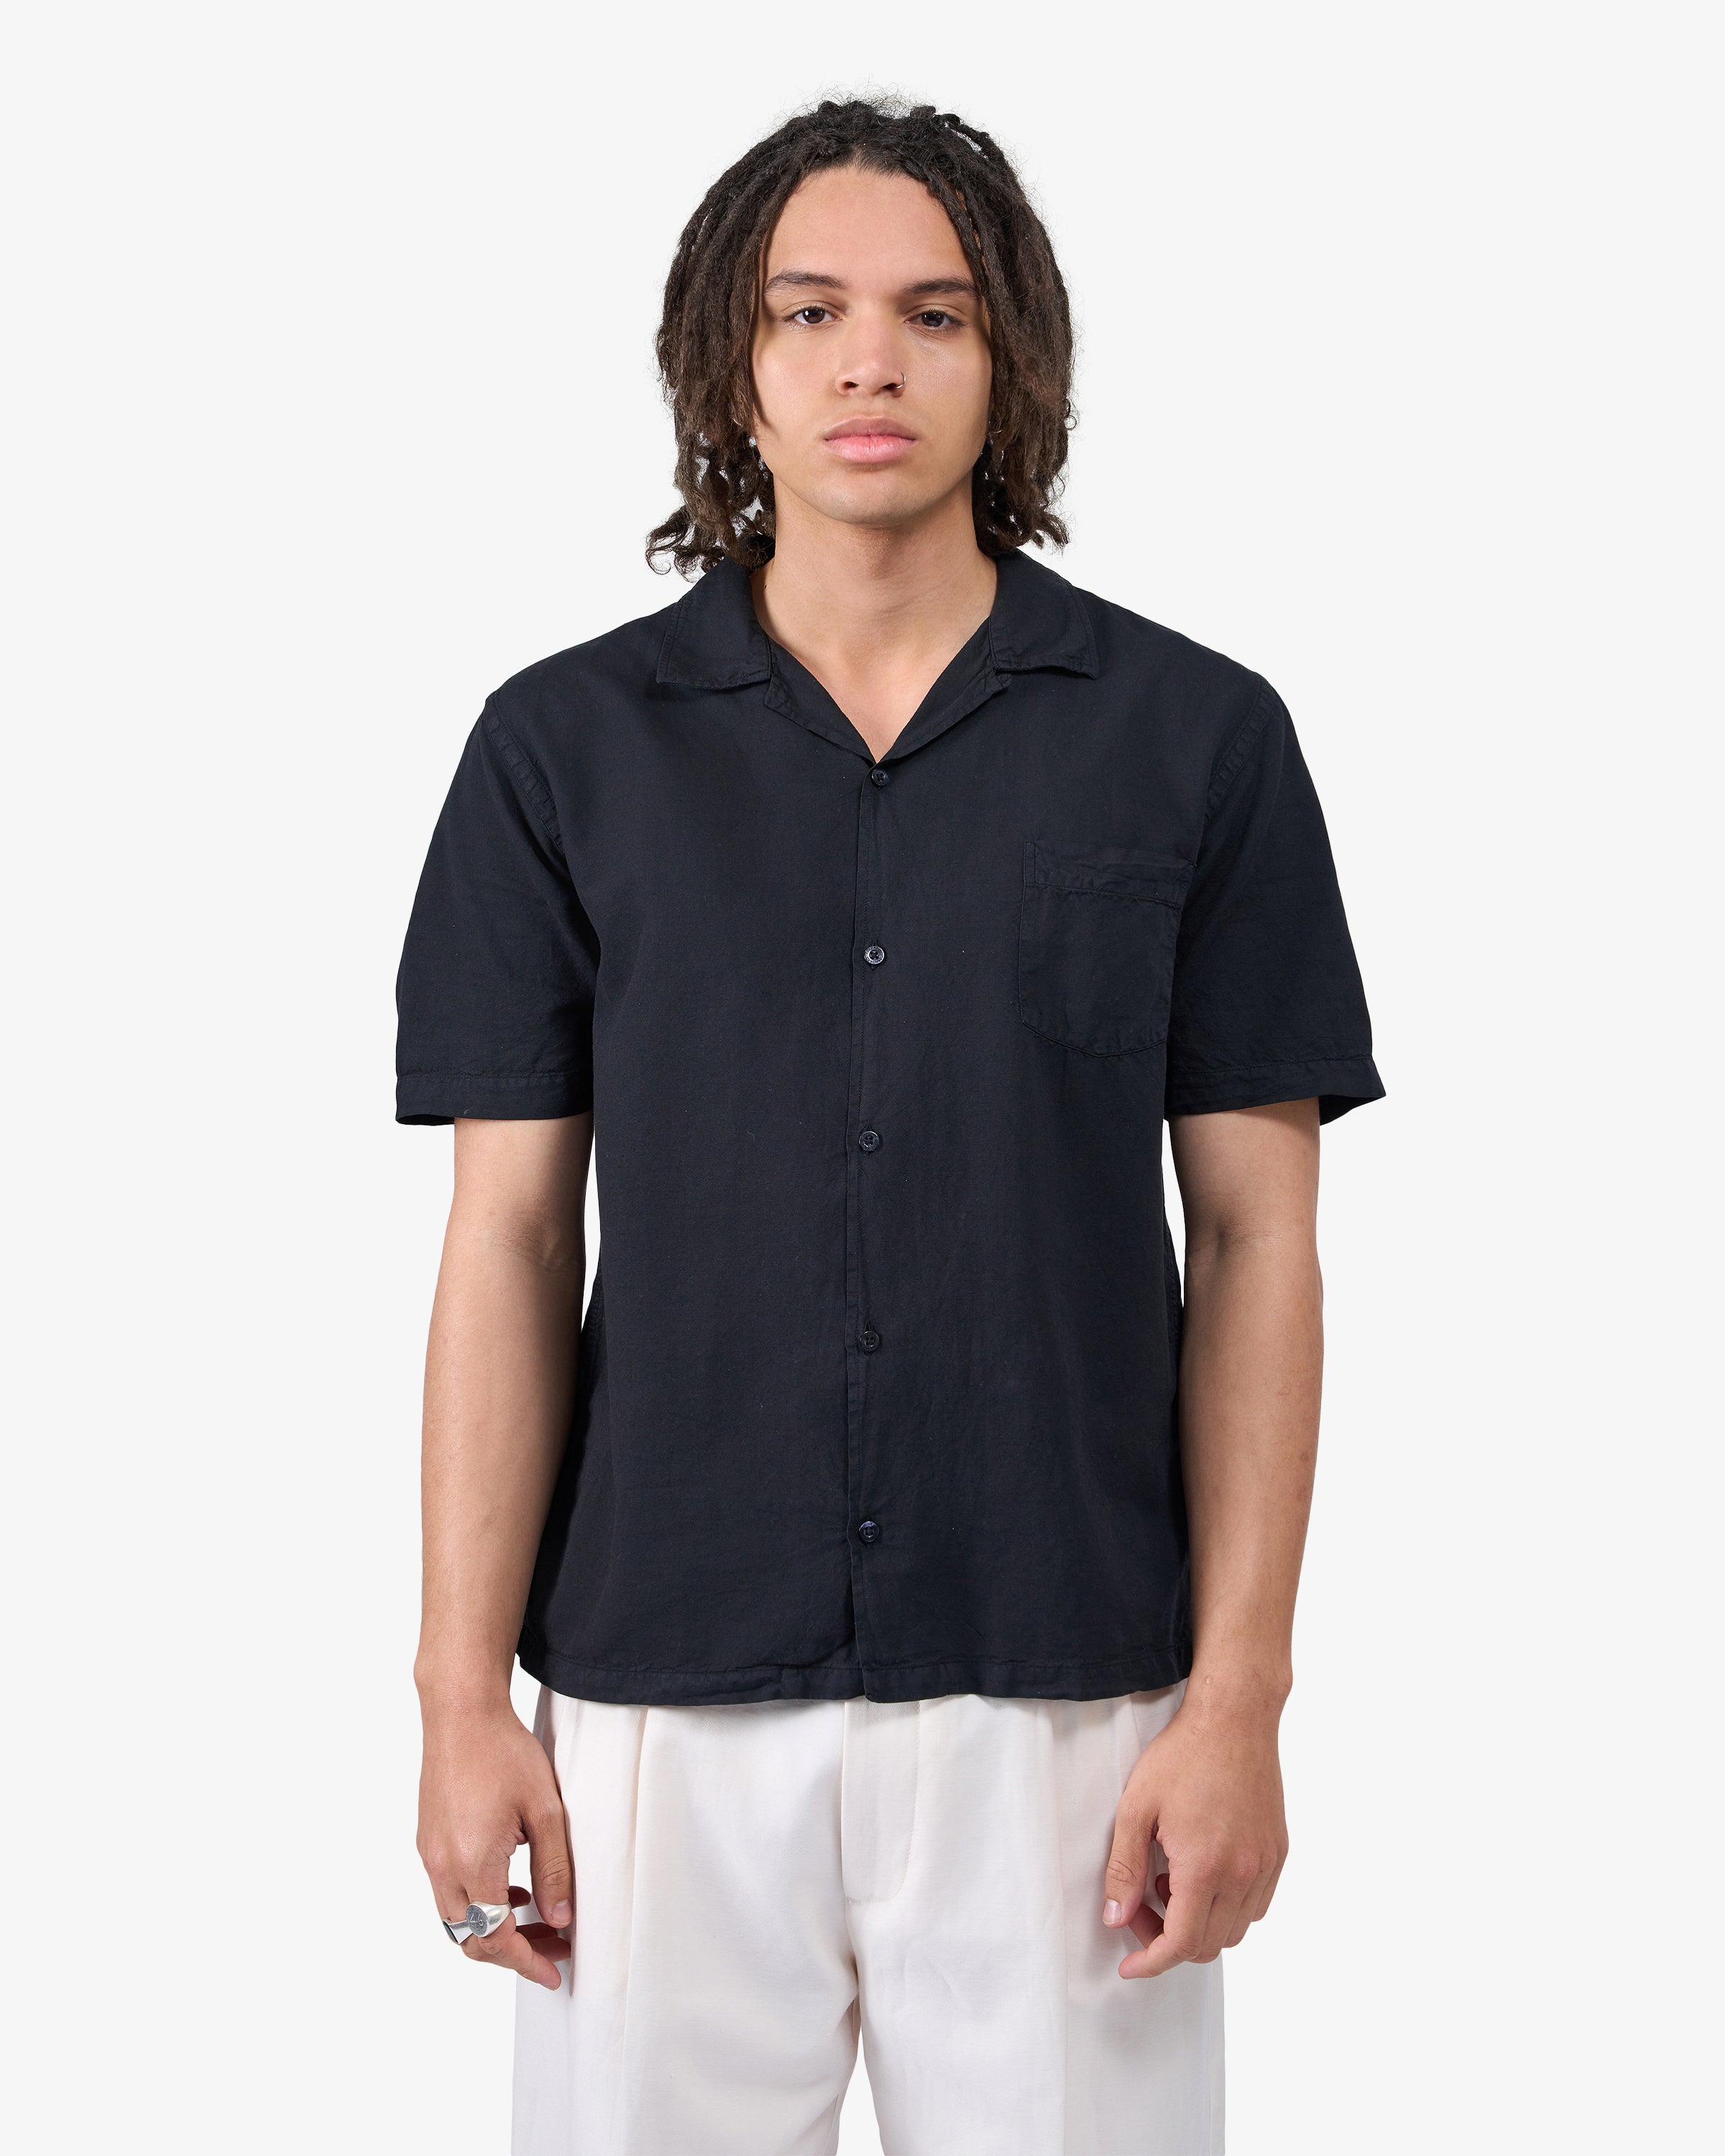 Linen Short Sleeved Shirt - Teal Blue